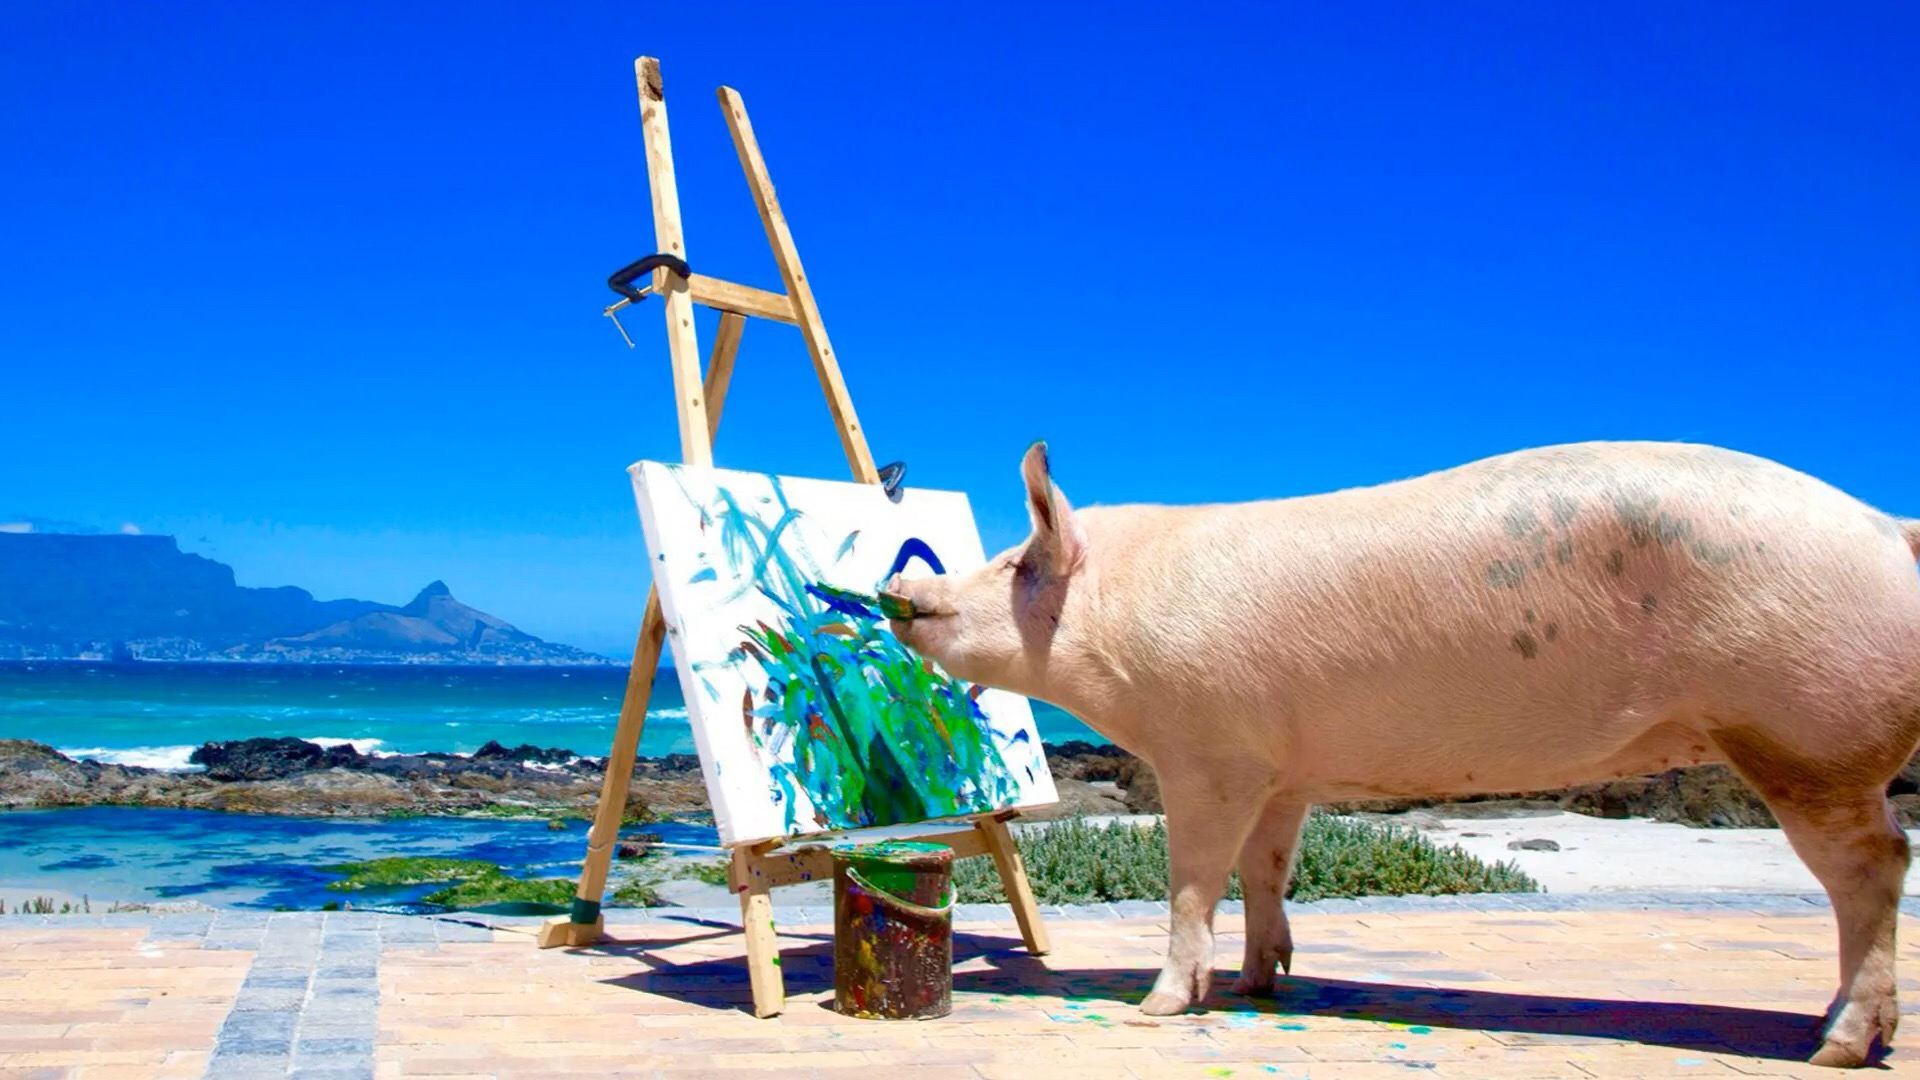 这是小猪加索!一只会画画的艺术猪,其作品最高卖到4000美金